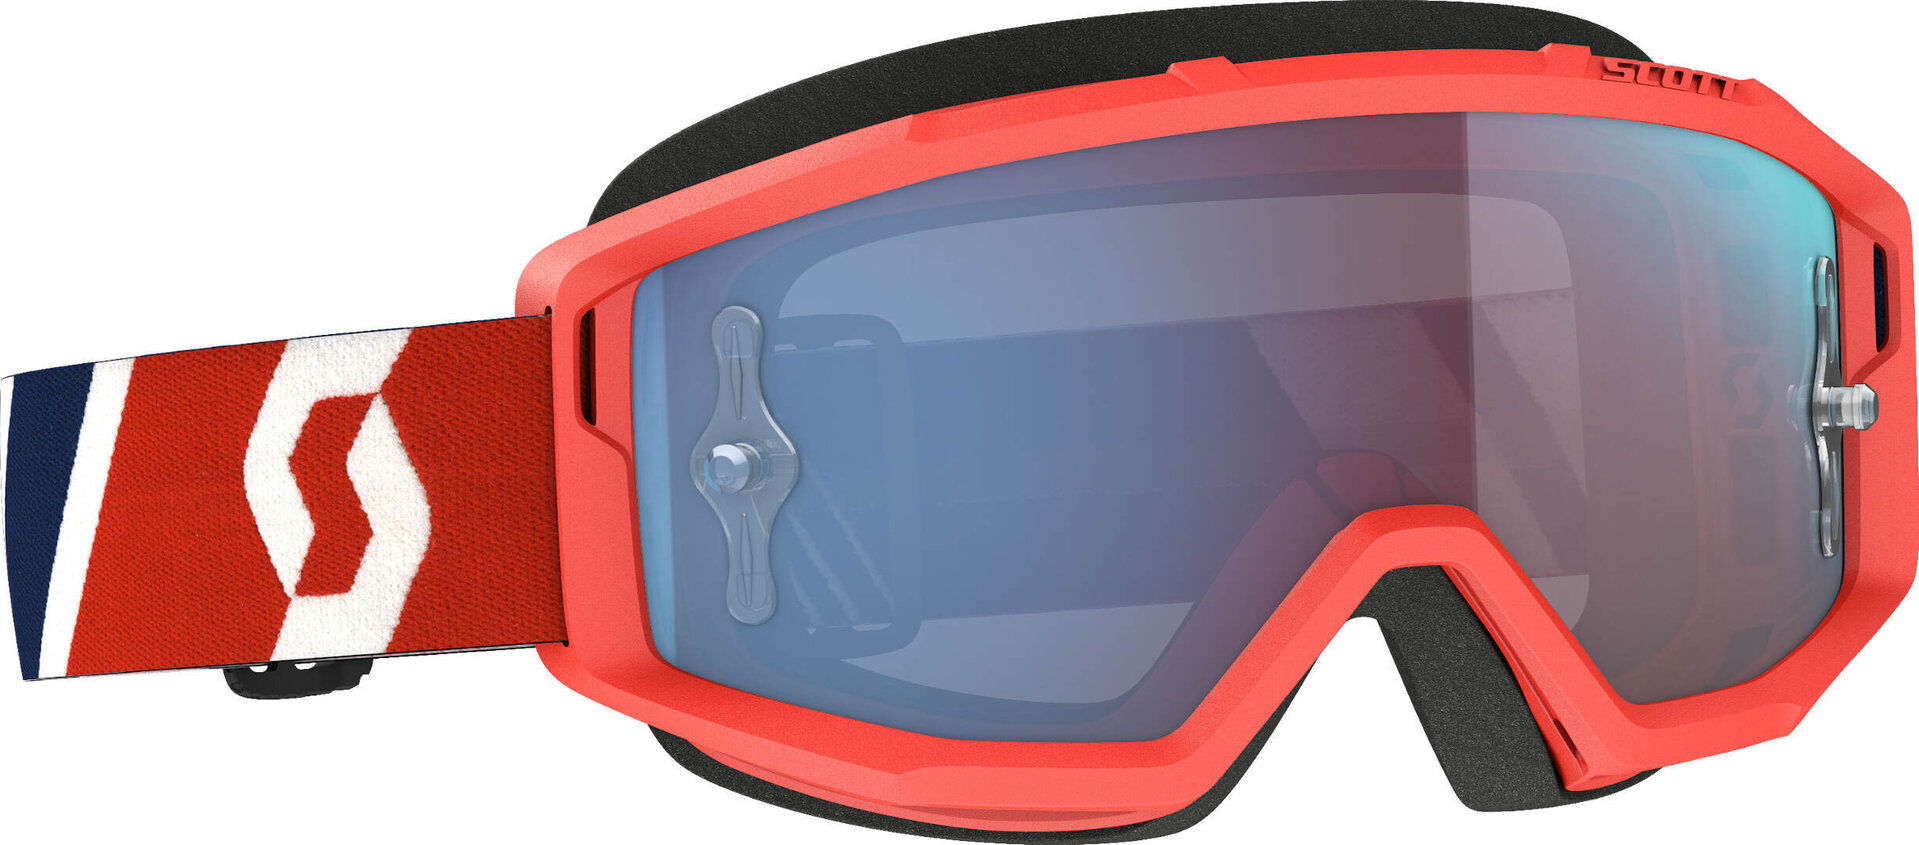 Scott Primal Gafas de Motocross rojo/azul - Azul Rojo (un tamaño)